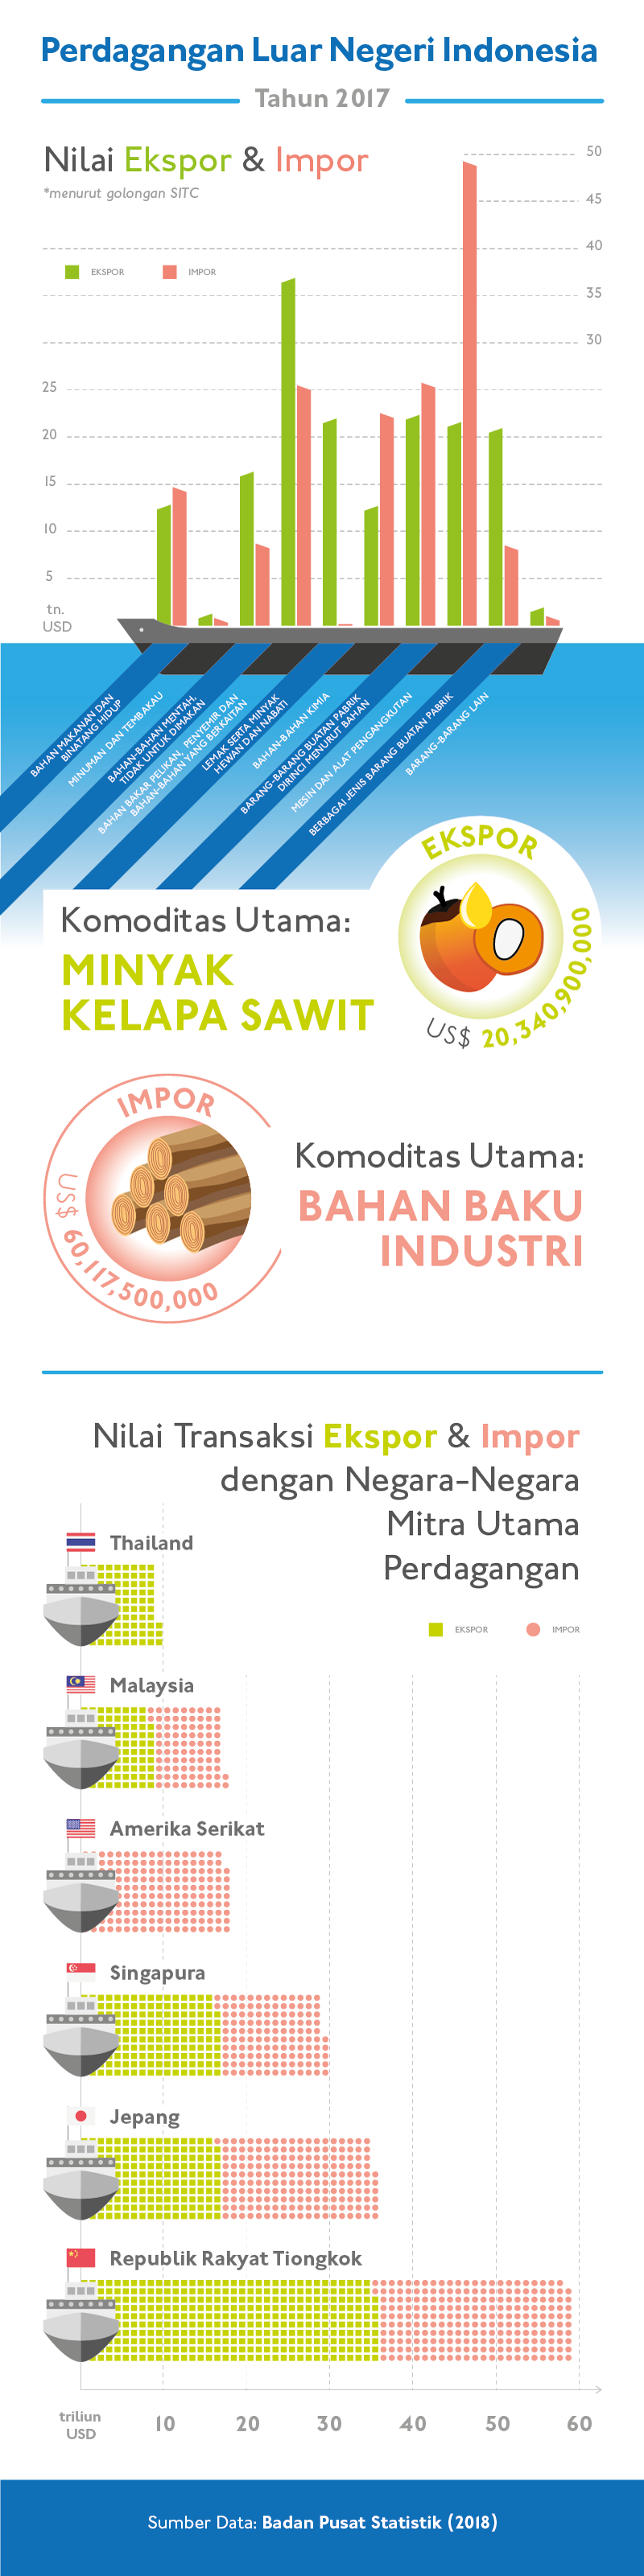 infographic infografis perdagangan trade International export Import ekspor impor